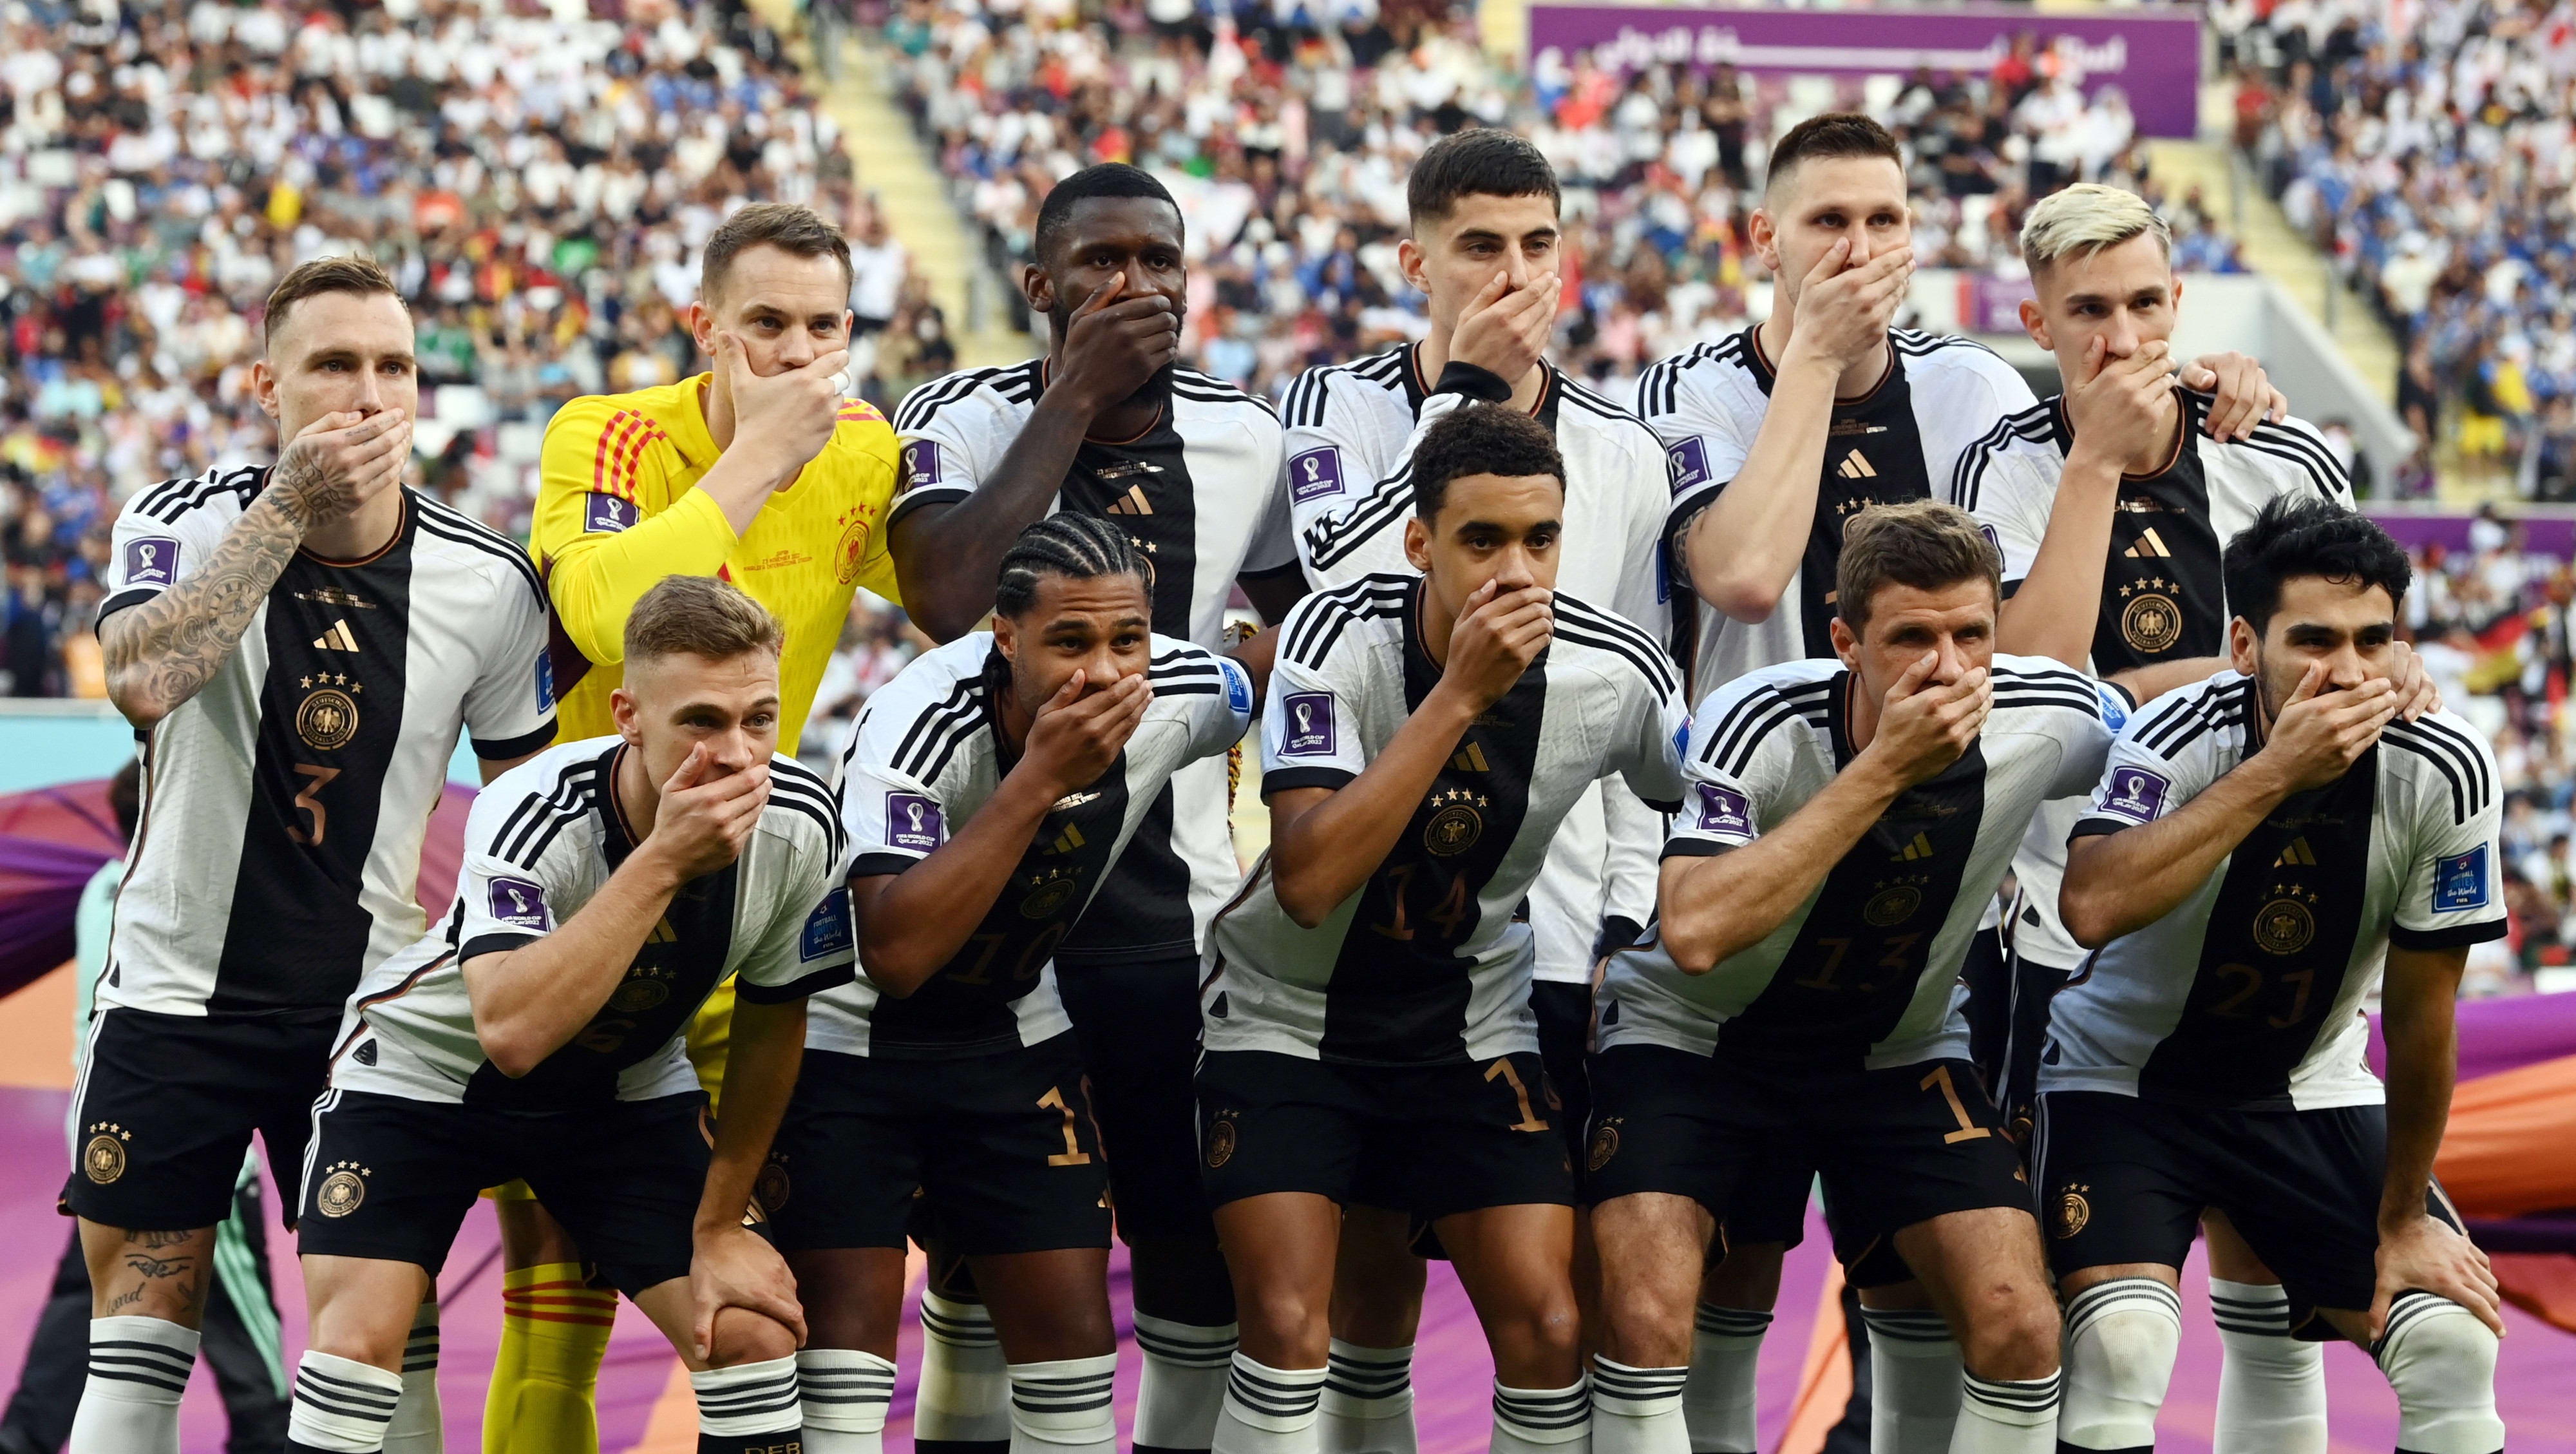 שחקני נבחרת גרמניה מכסים את הפה במחאה נגד פיפ"א